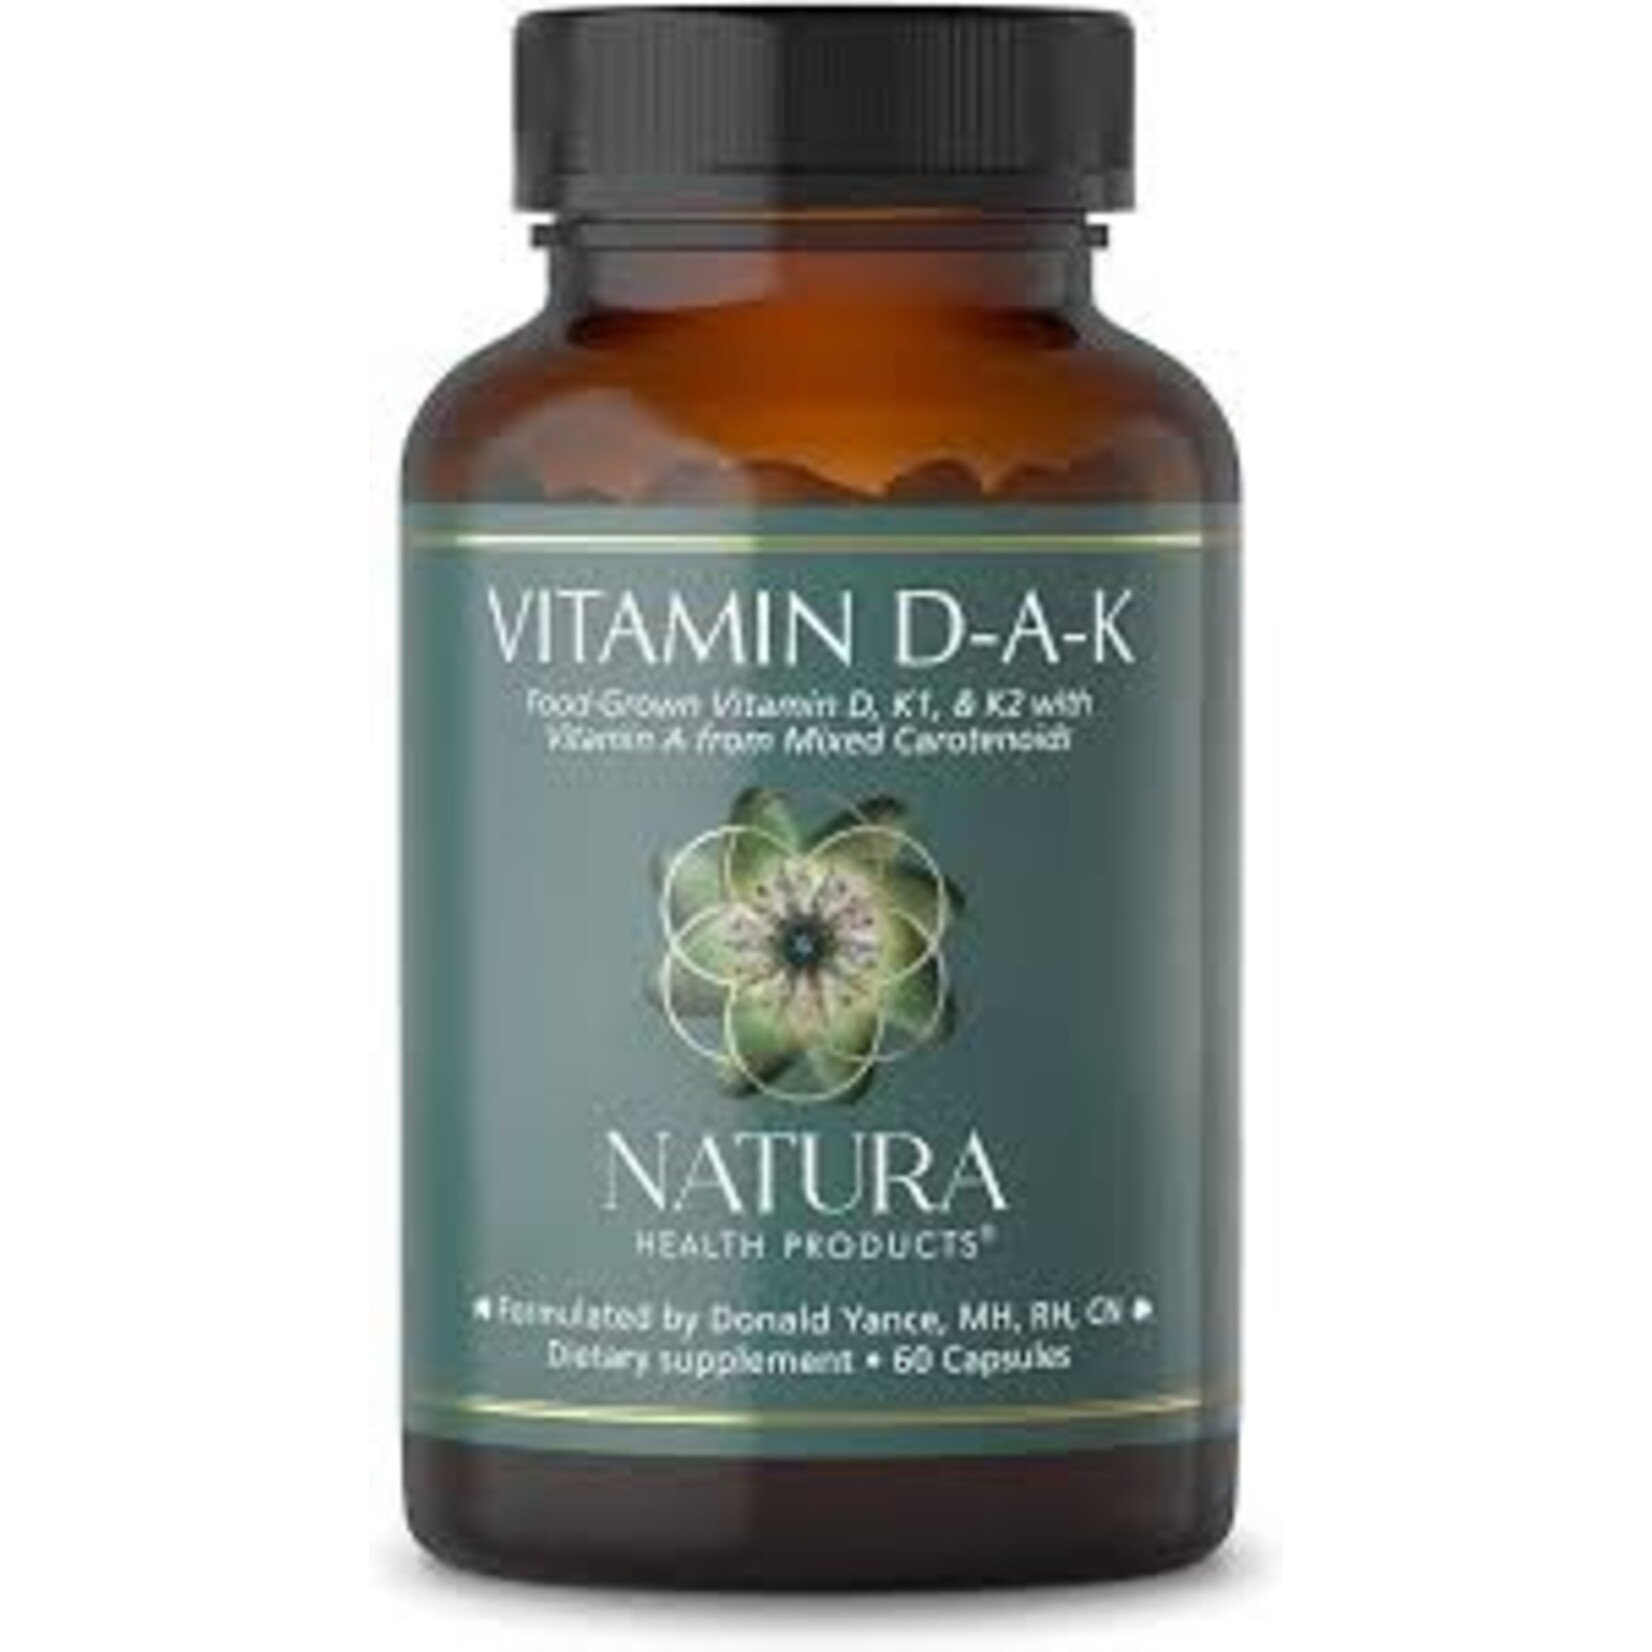 Vitamin DAK (Natura)